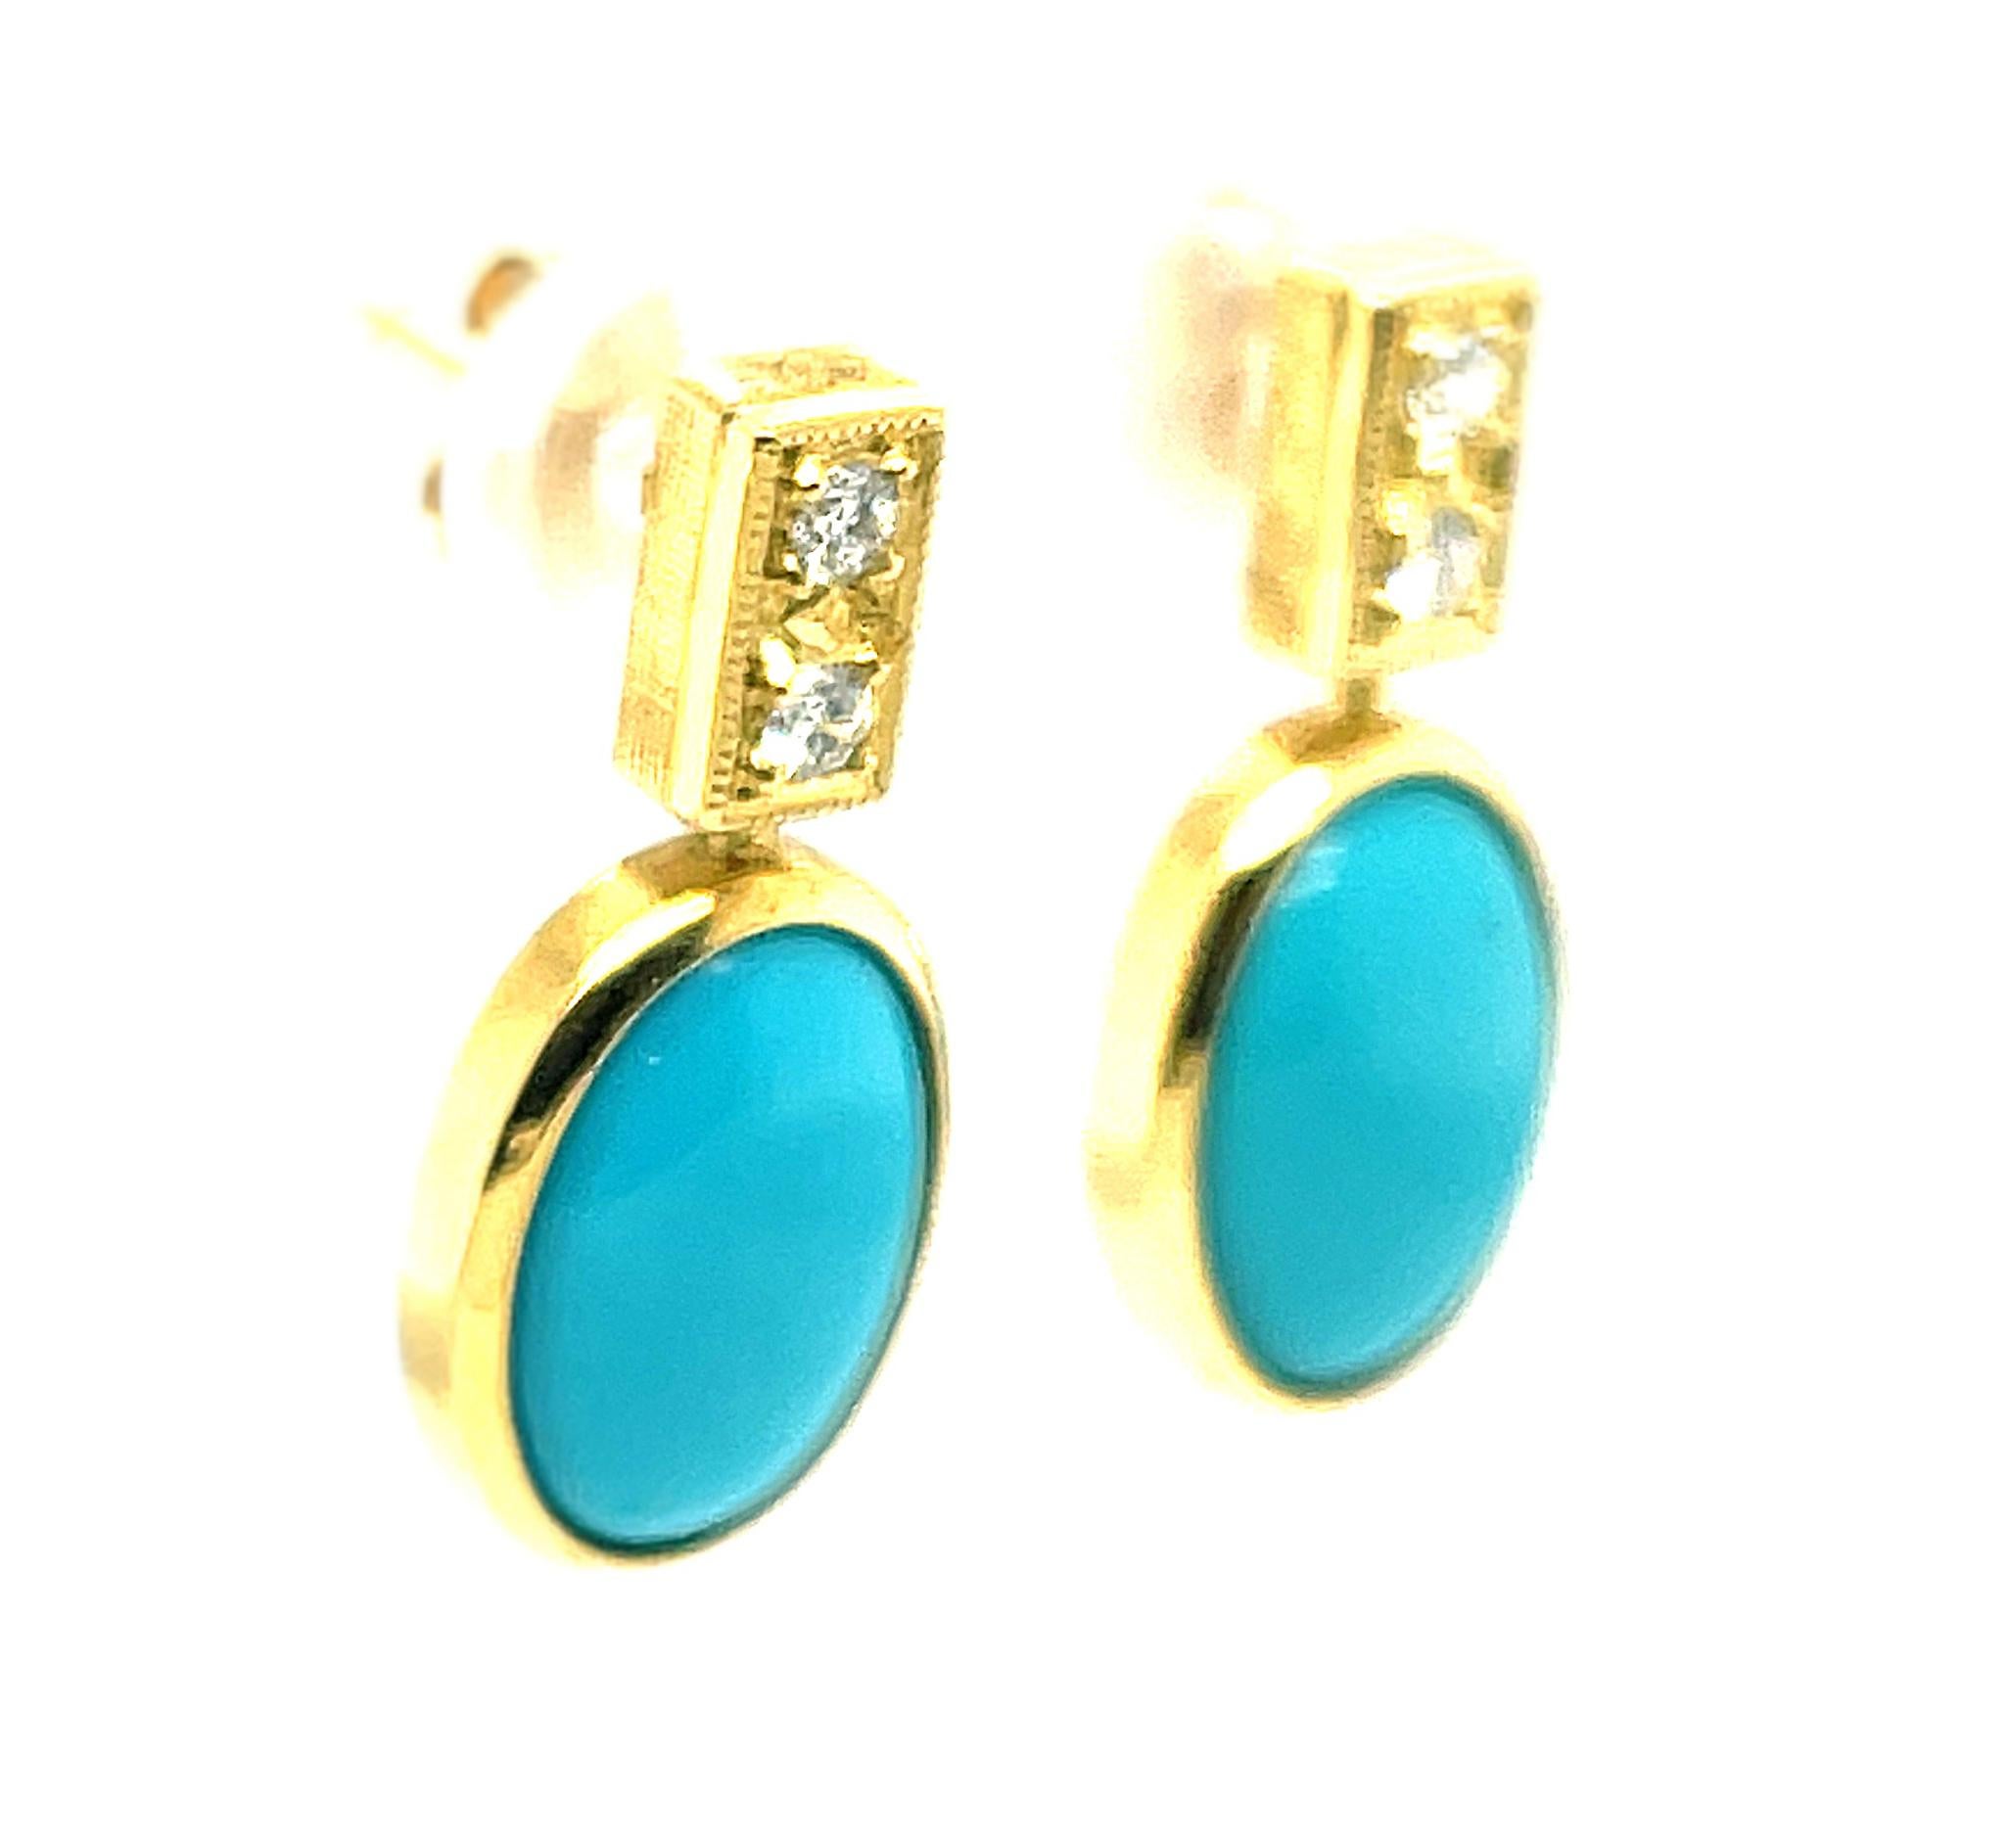 22 carat gold earrings